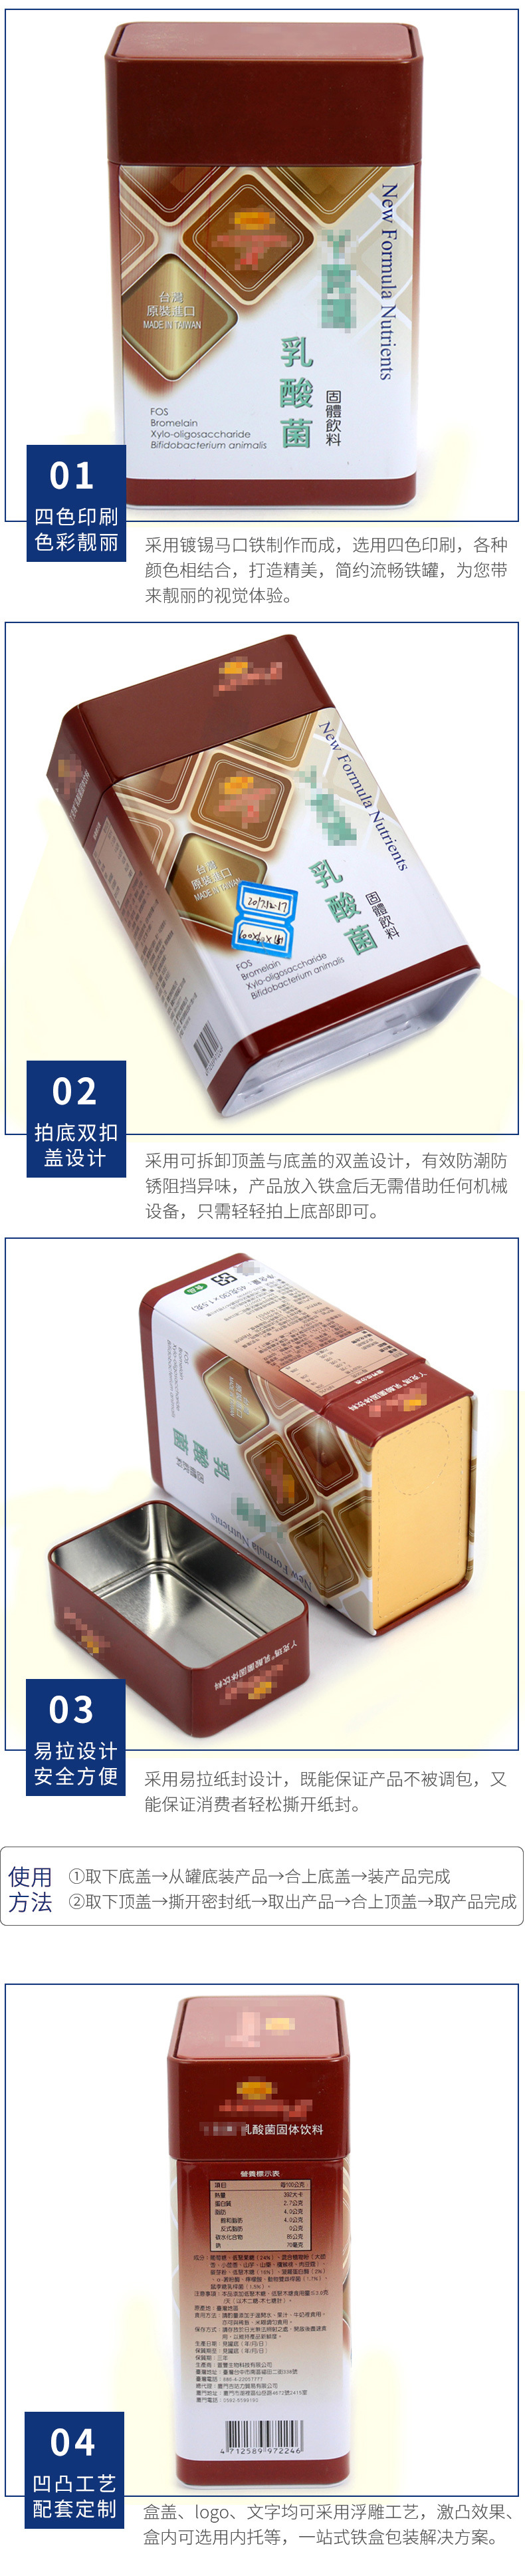 直销乳酸菌固体饮料铁盒 营养品铁盒包装定制 麦氏罐业马口铁盒示例图14